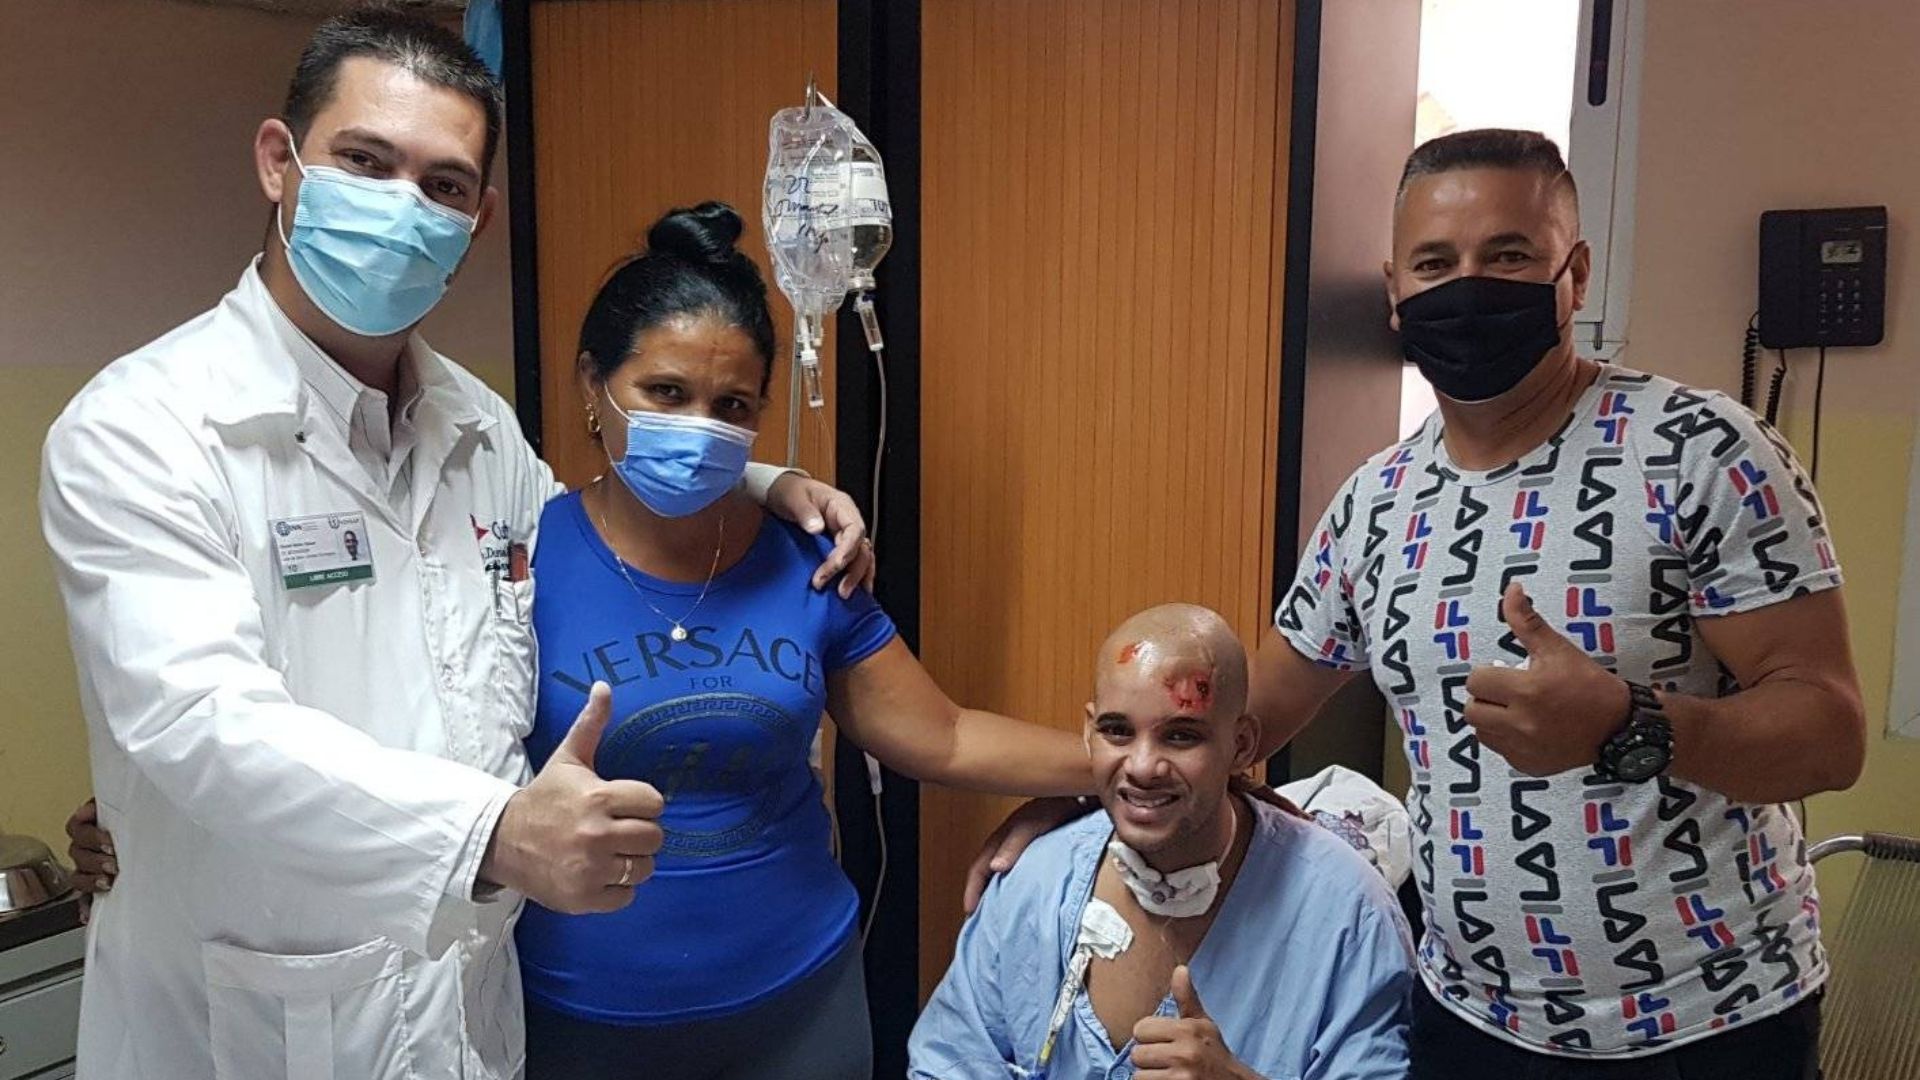 El neurocirujano Duniel Abreu, parte del equipo de profesionales, confirmó en redes sociales que el paciente se recupera satisfactoriamente luego de varios procedimientos médicos complejos